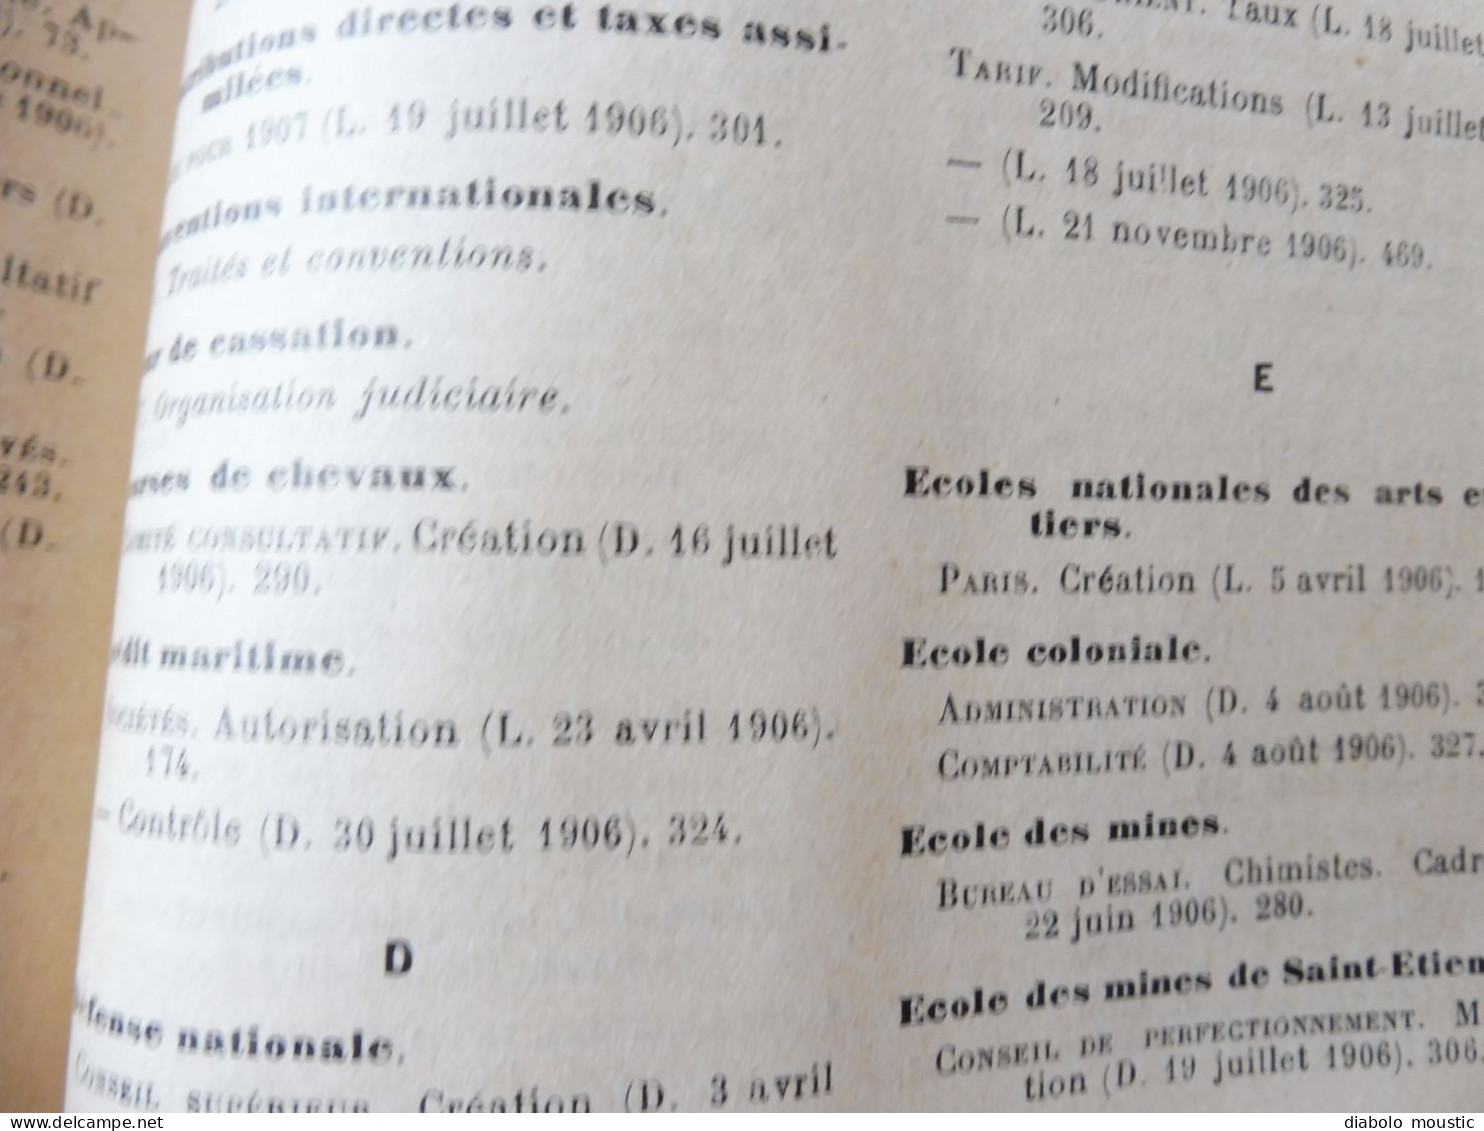 1906  RECUEIL des LOIS : Fraudes et répressions, Explosifs, Code pénal, Police sanitaire,  Etc ; Etc